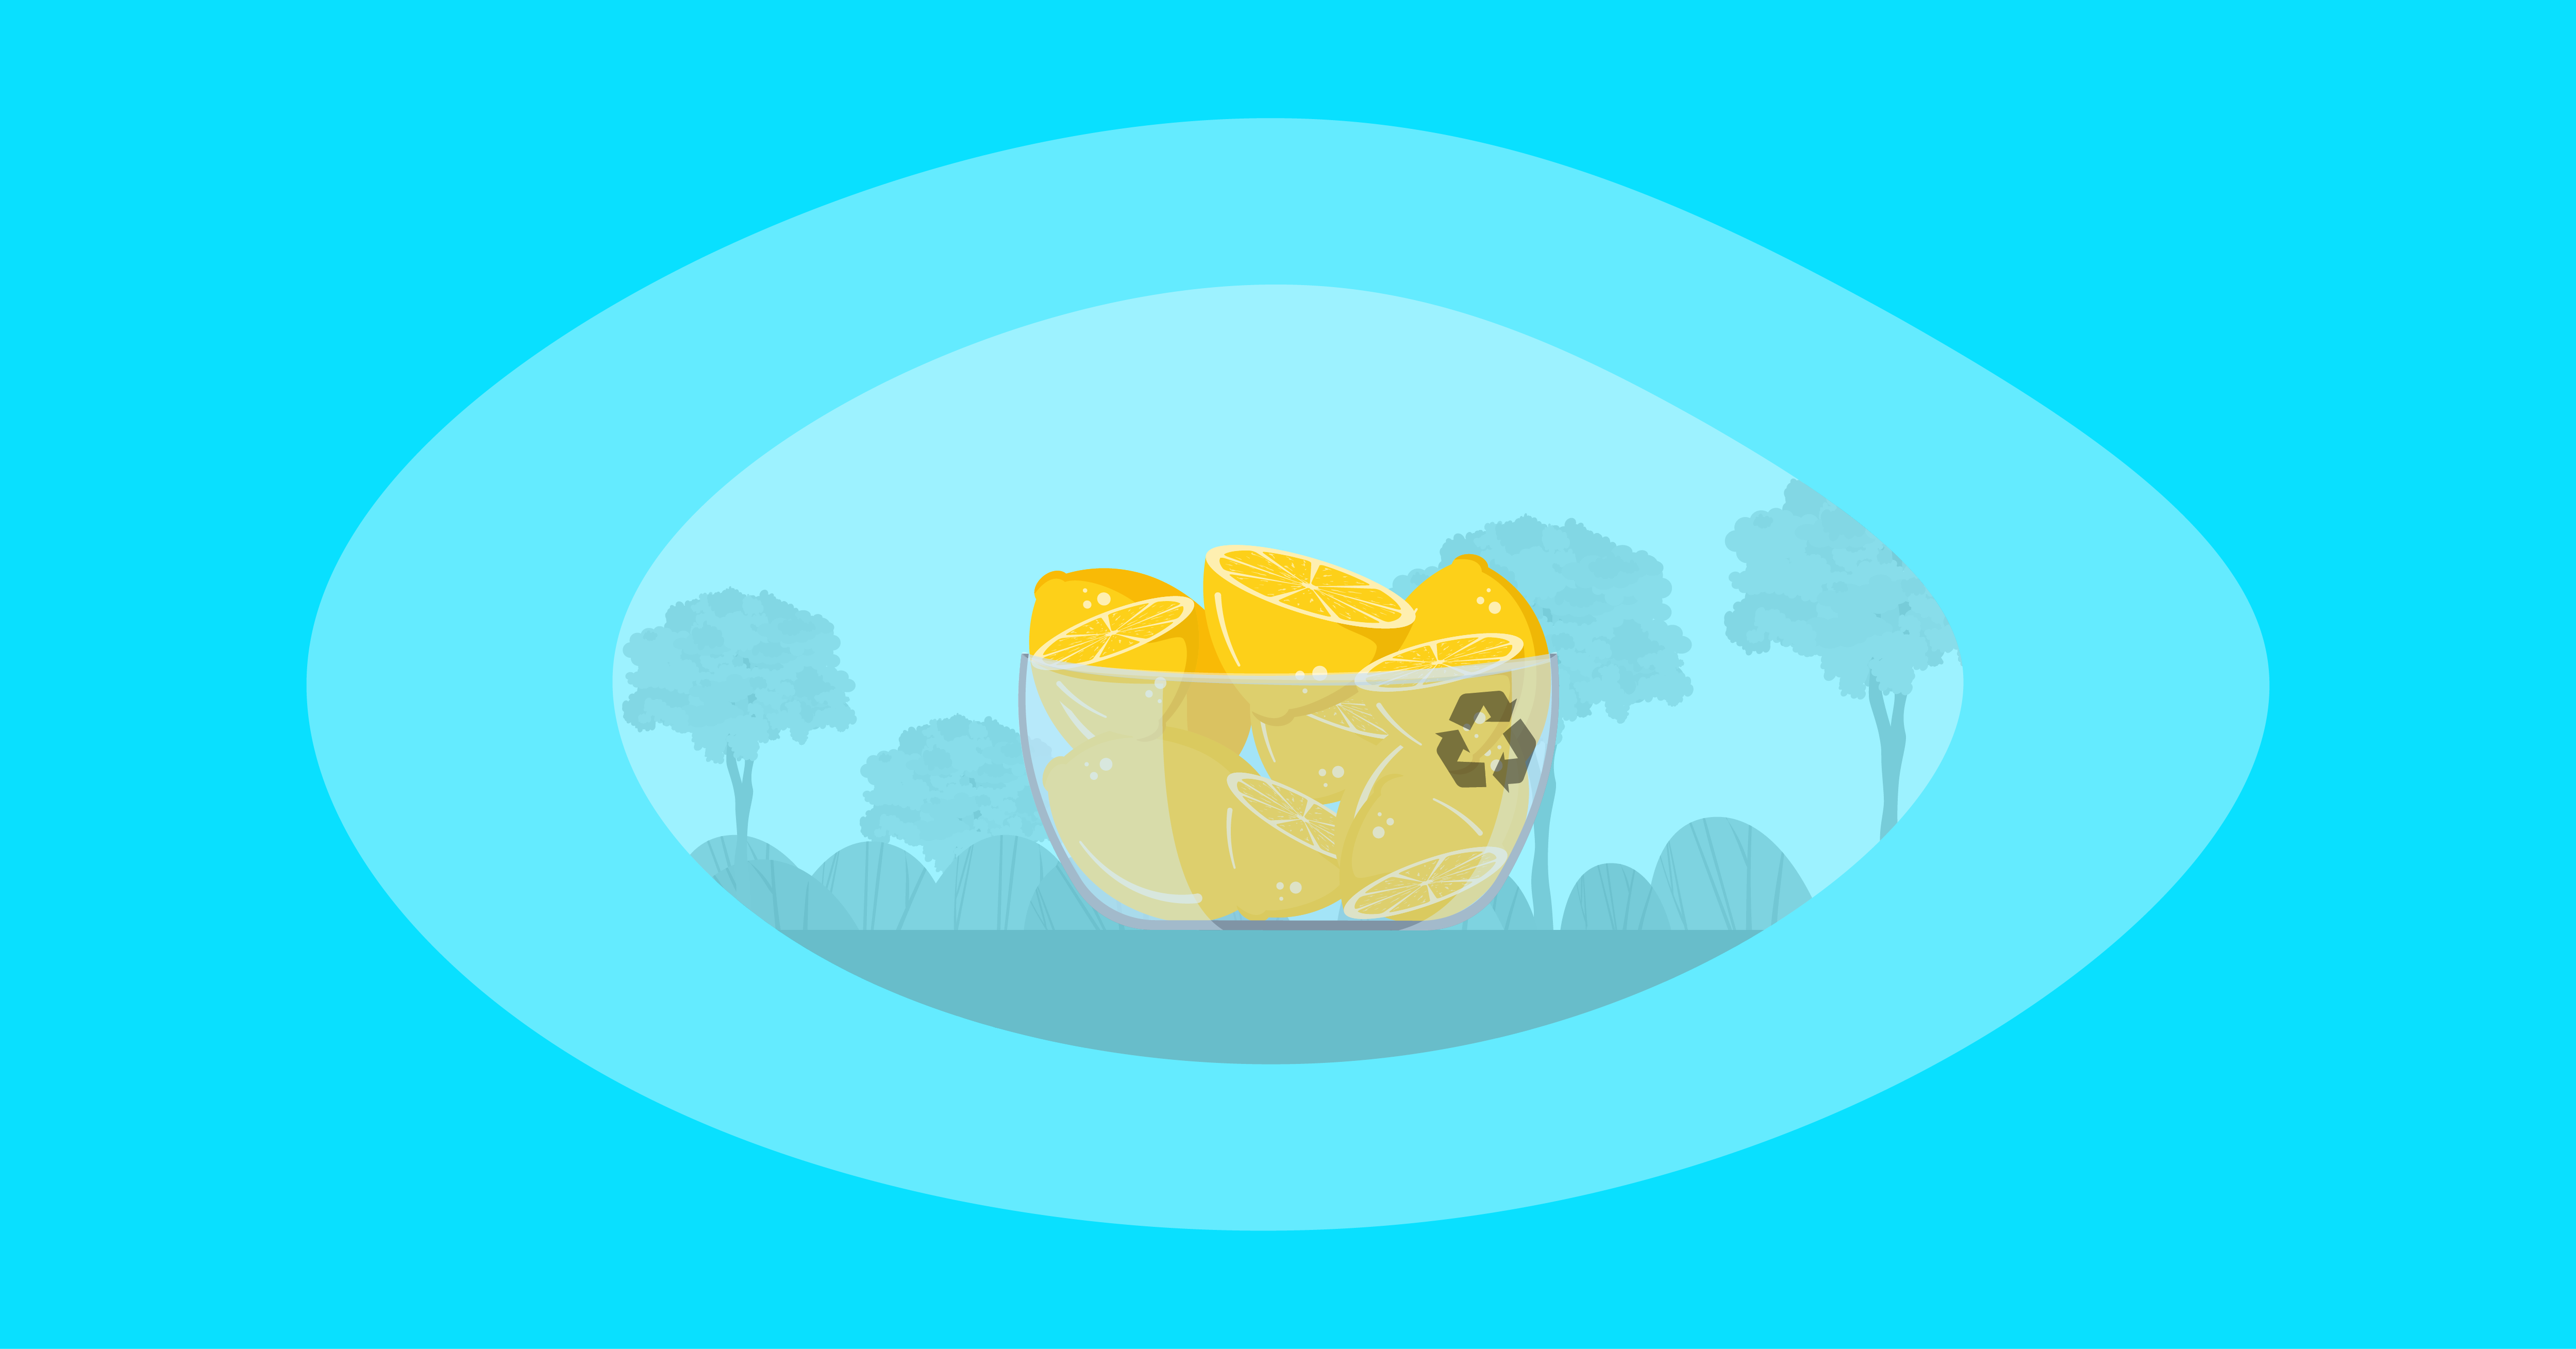 Illustration of lemons inside a glass bowl